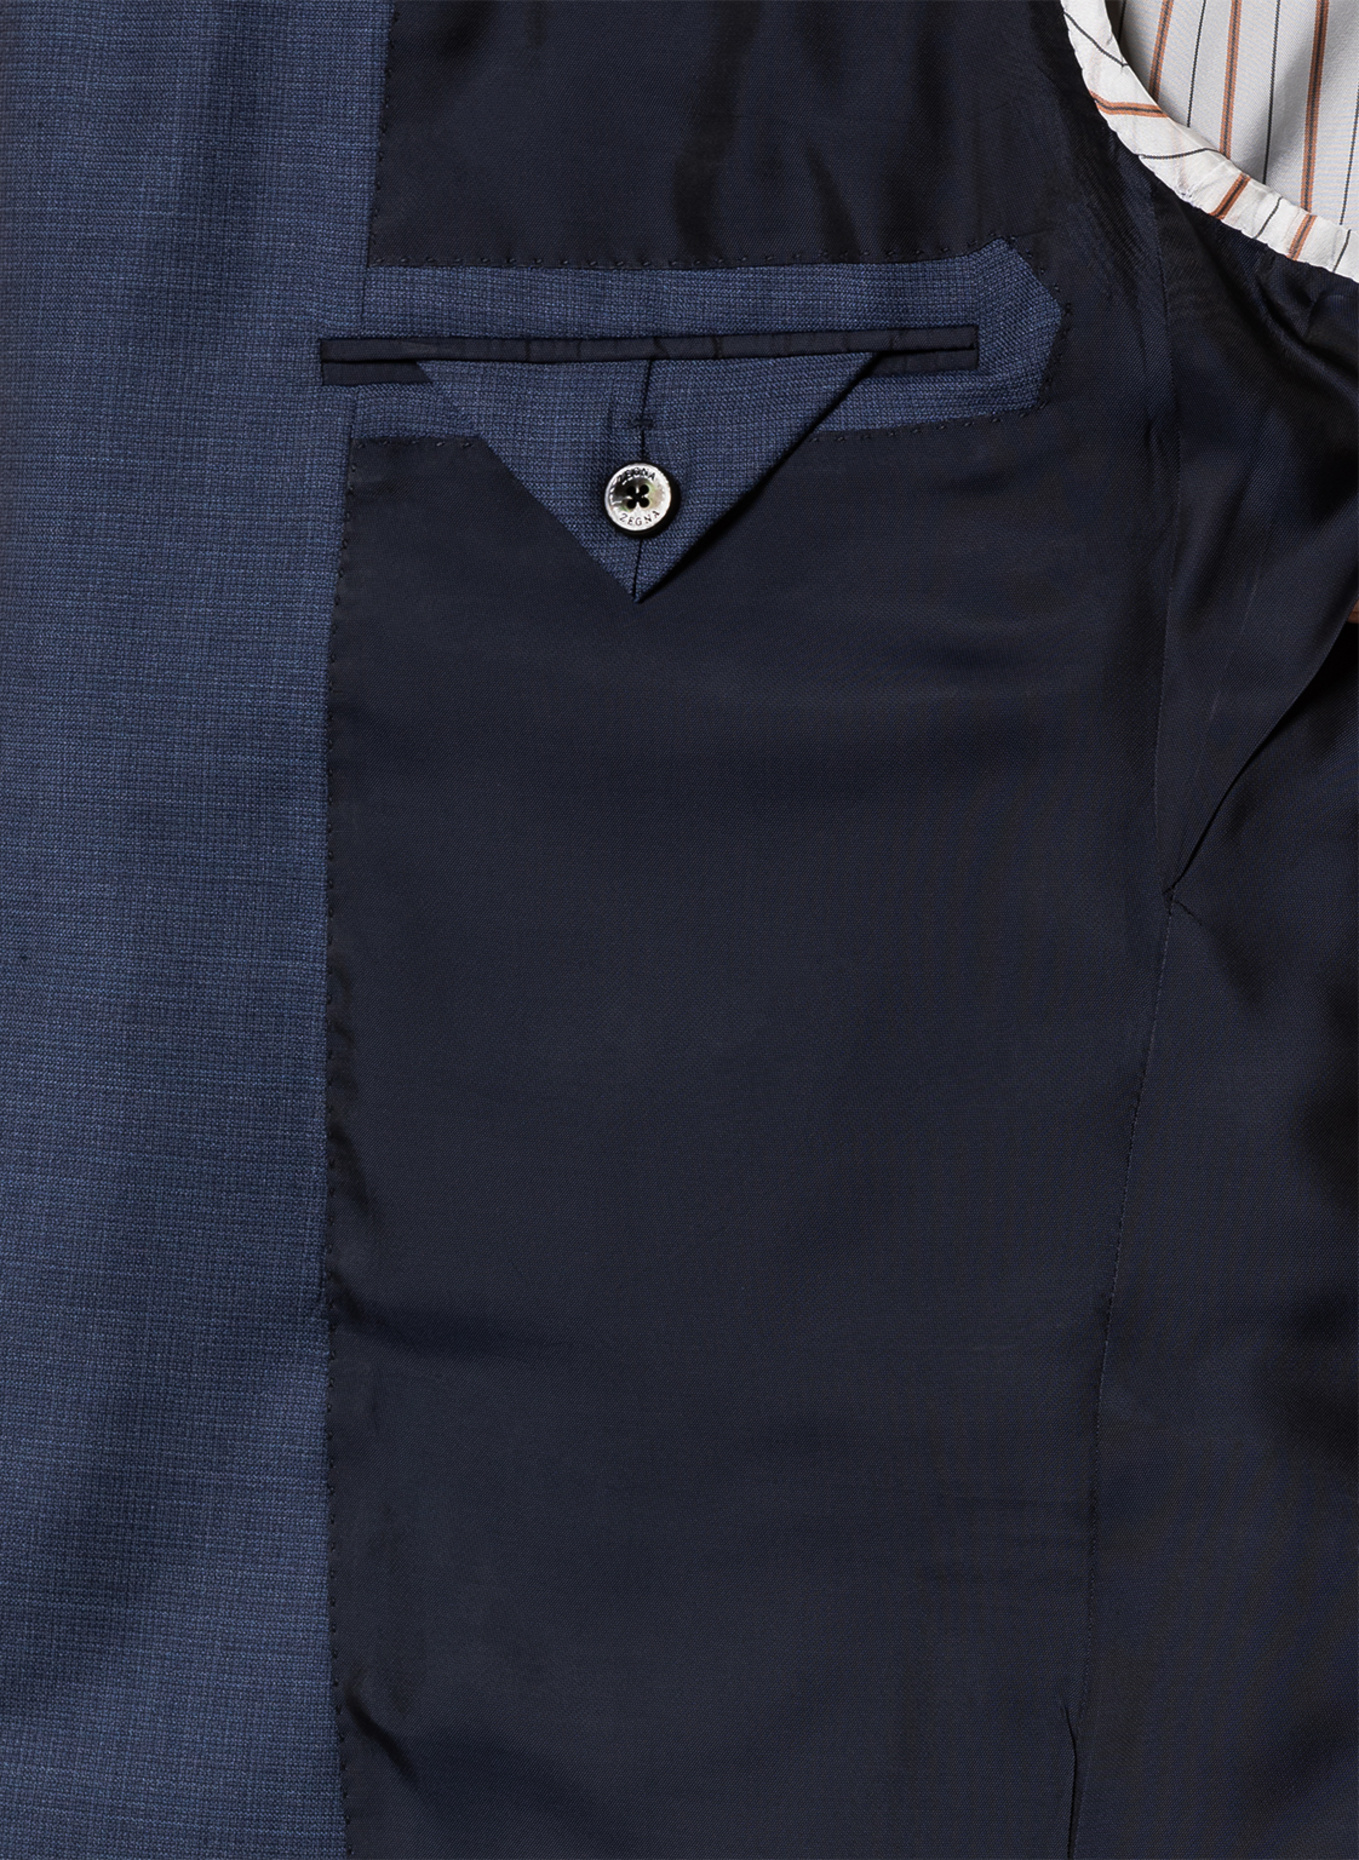 ZEGNA Suit slim fit, Color: BLUE (Image 8)